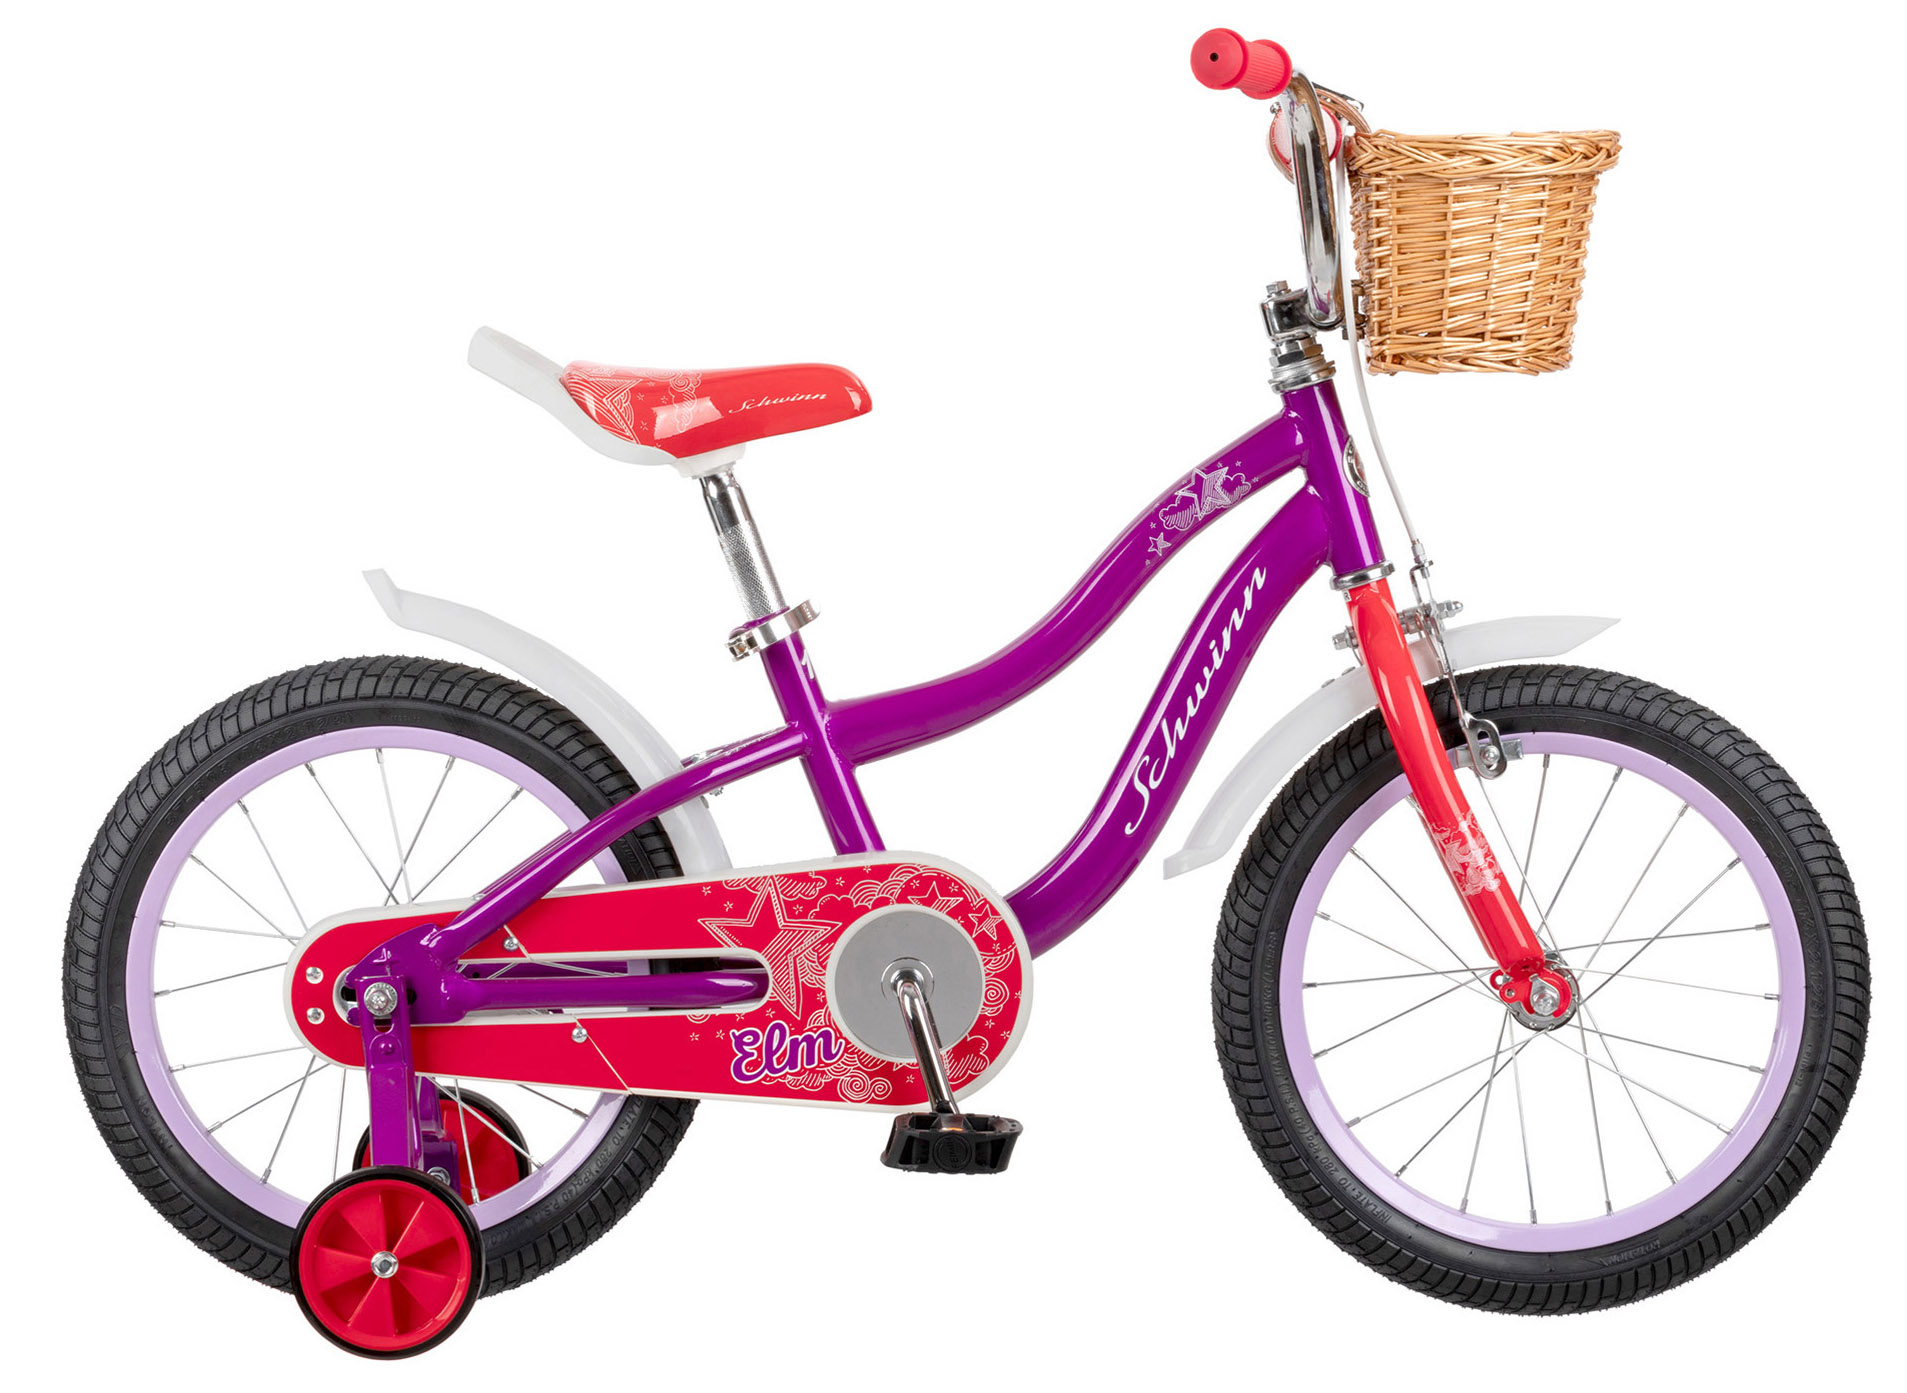  Отзывы о Детском велосипеде Schwinn Elm 16 2020